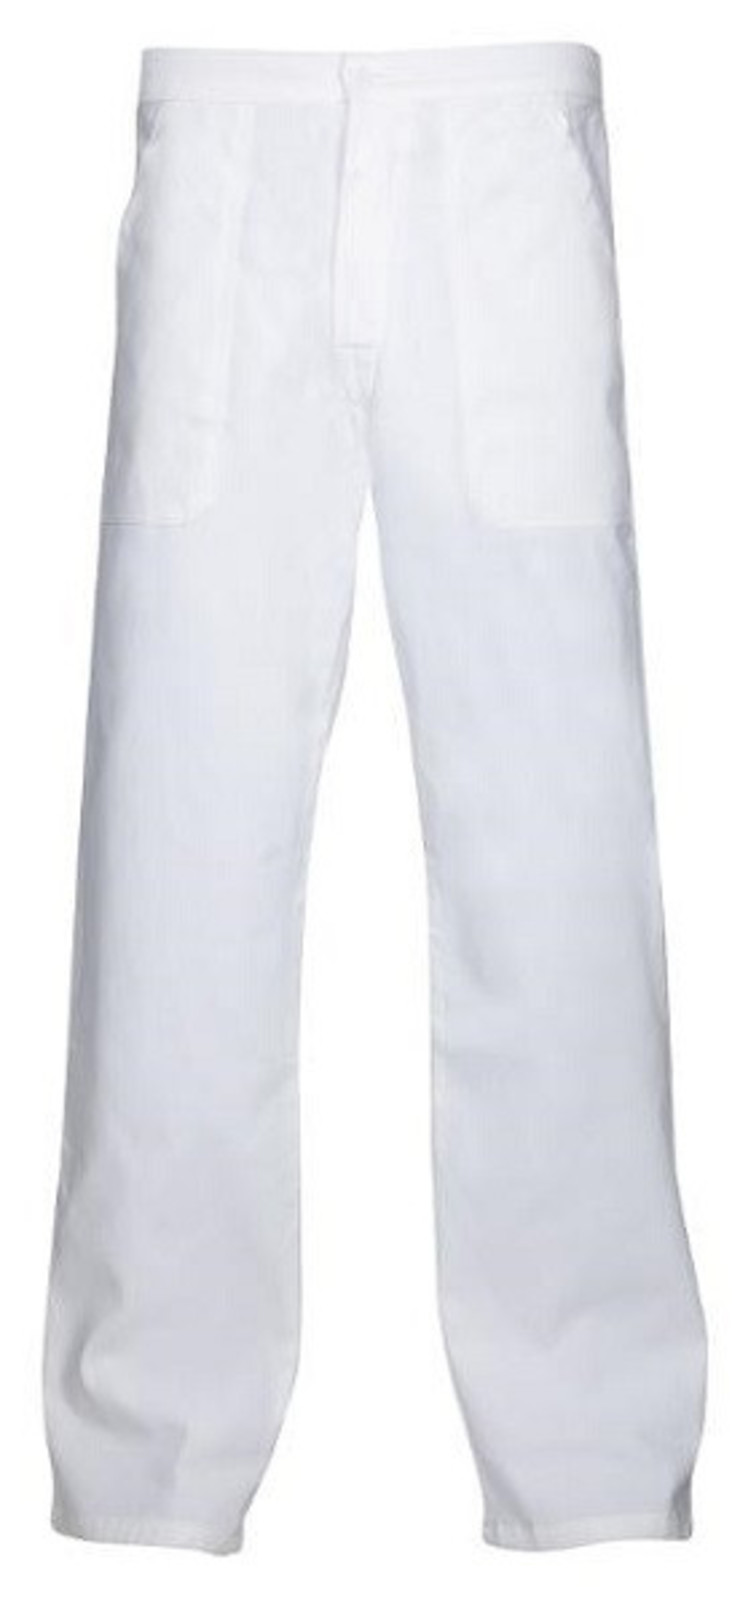 Pánske biele nohavice Ardon Sander - veľkosť: 60, farba: biela